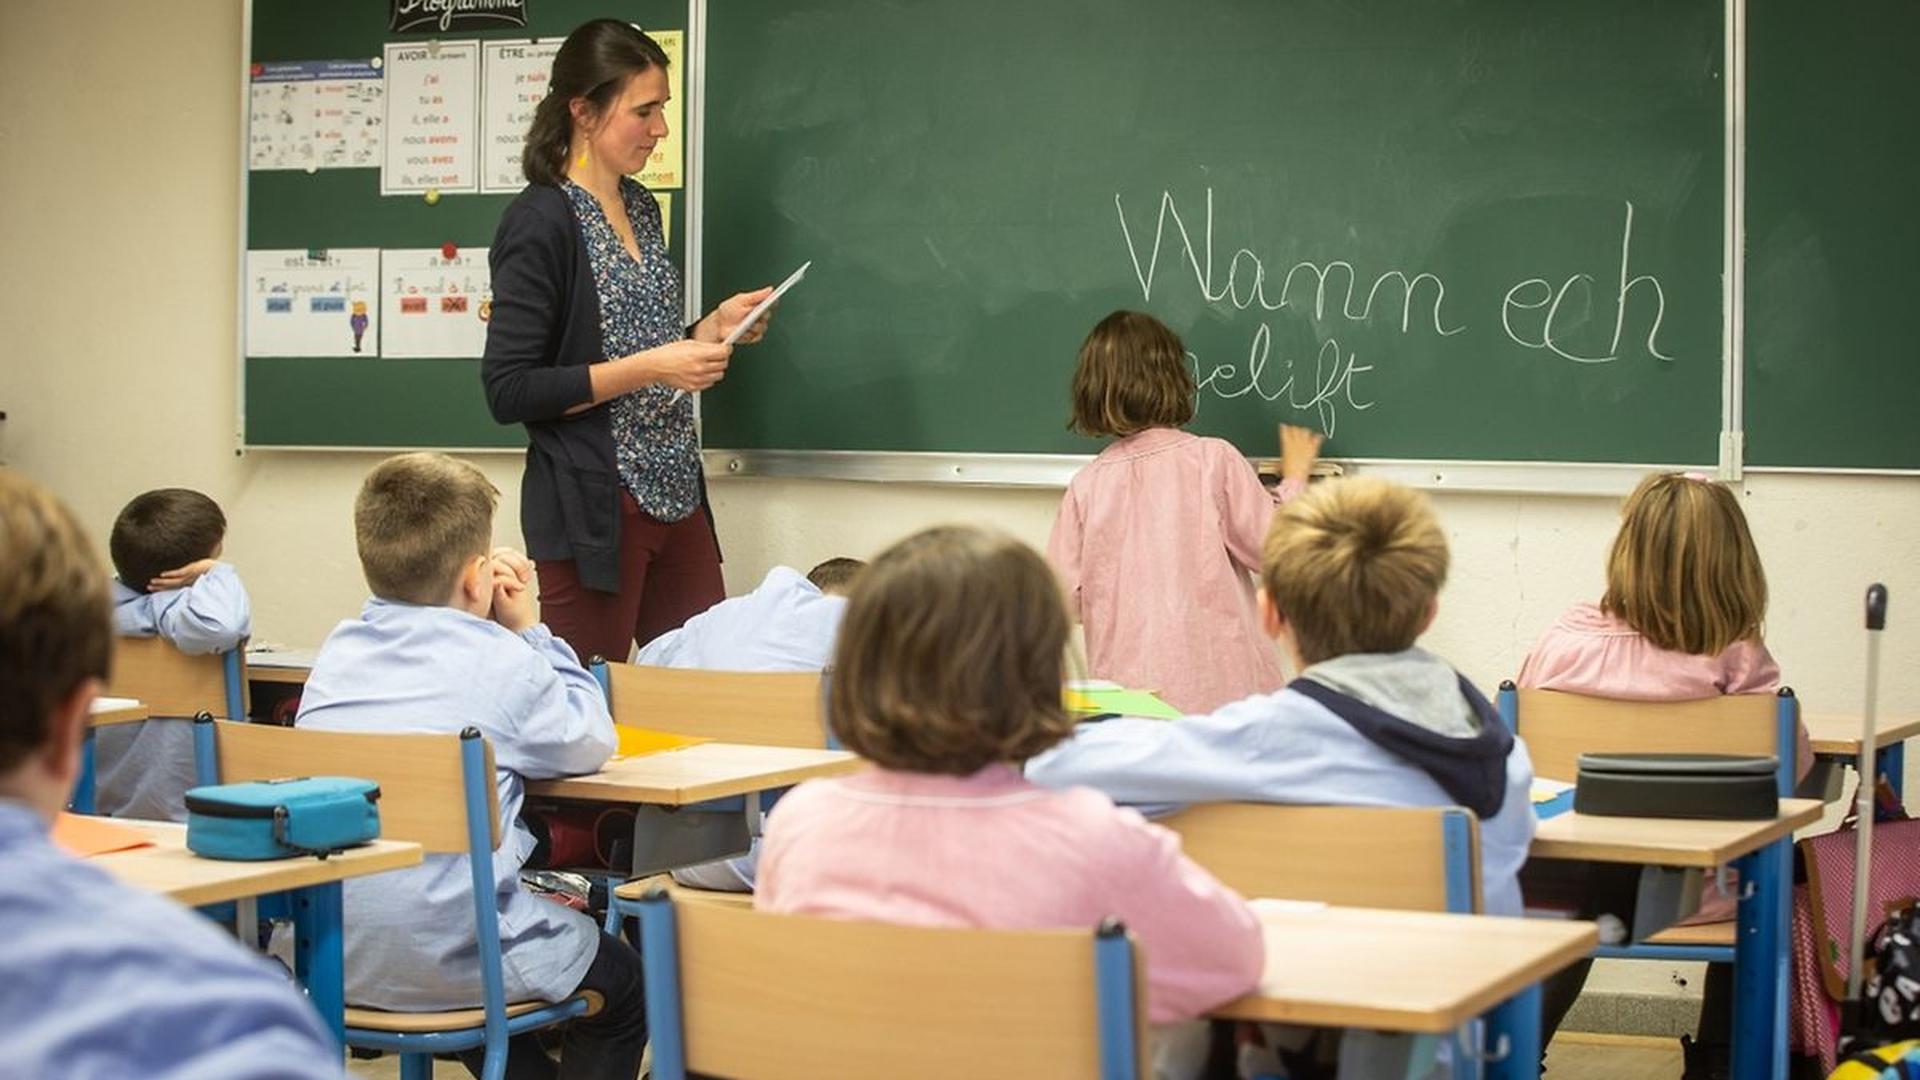 L'école Charlemagne s'est lancée en septembre dernier dans une expérience qui n'a encore jamais été réalisée au Luxembourg par une école francophone: enseigner la langue luxembourgeoise aux élèves, dès les classes de primaire.